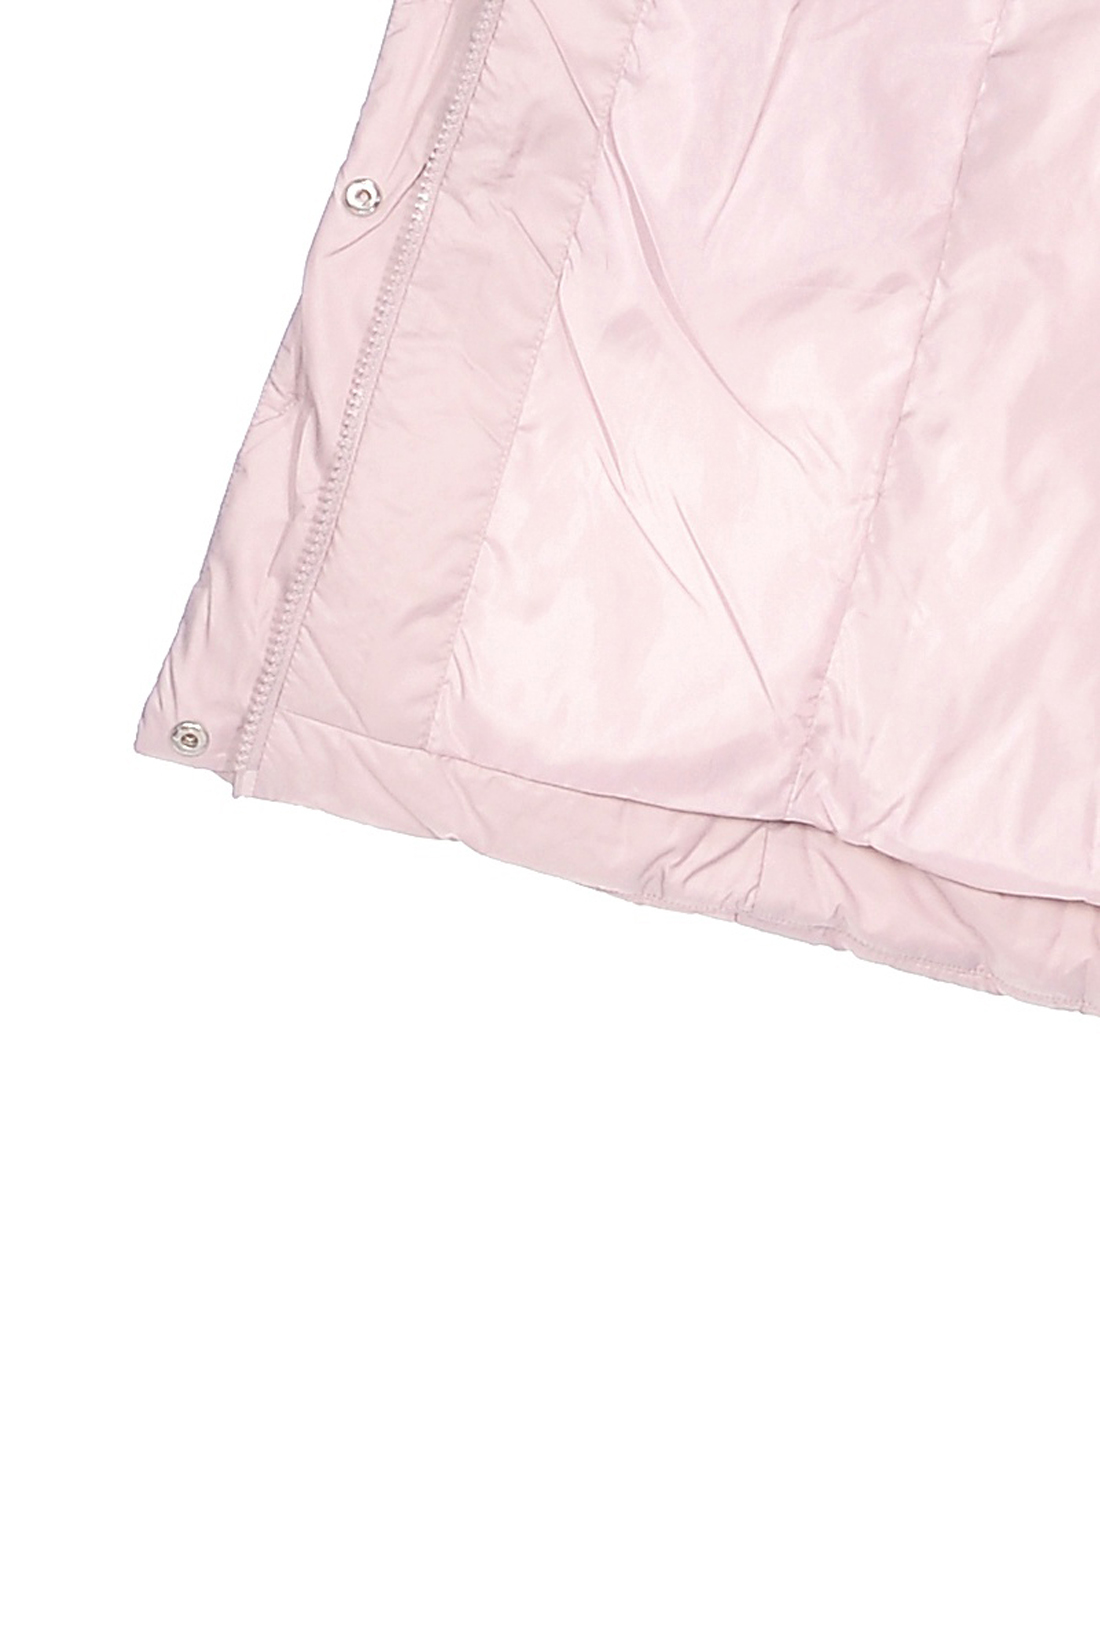 Куртка с мехом чернобурки (арт. baon B038562), размер XXL, цвет розовый Куртка с мехом чернобурки (арт. baon B038562) - фото 4